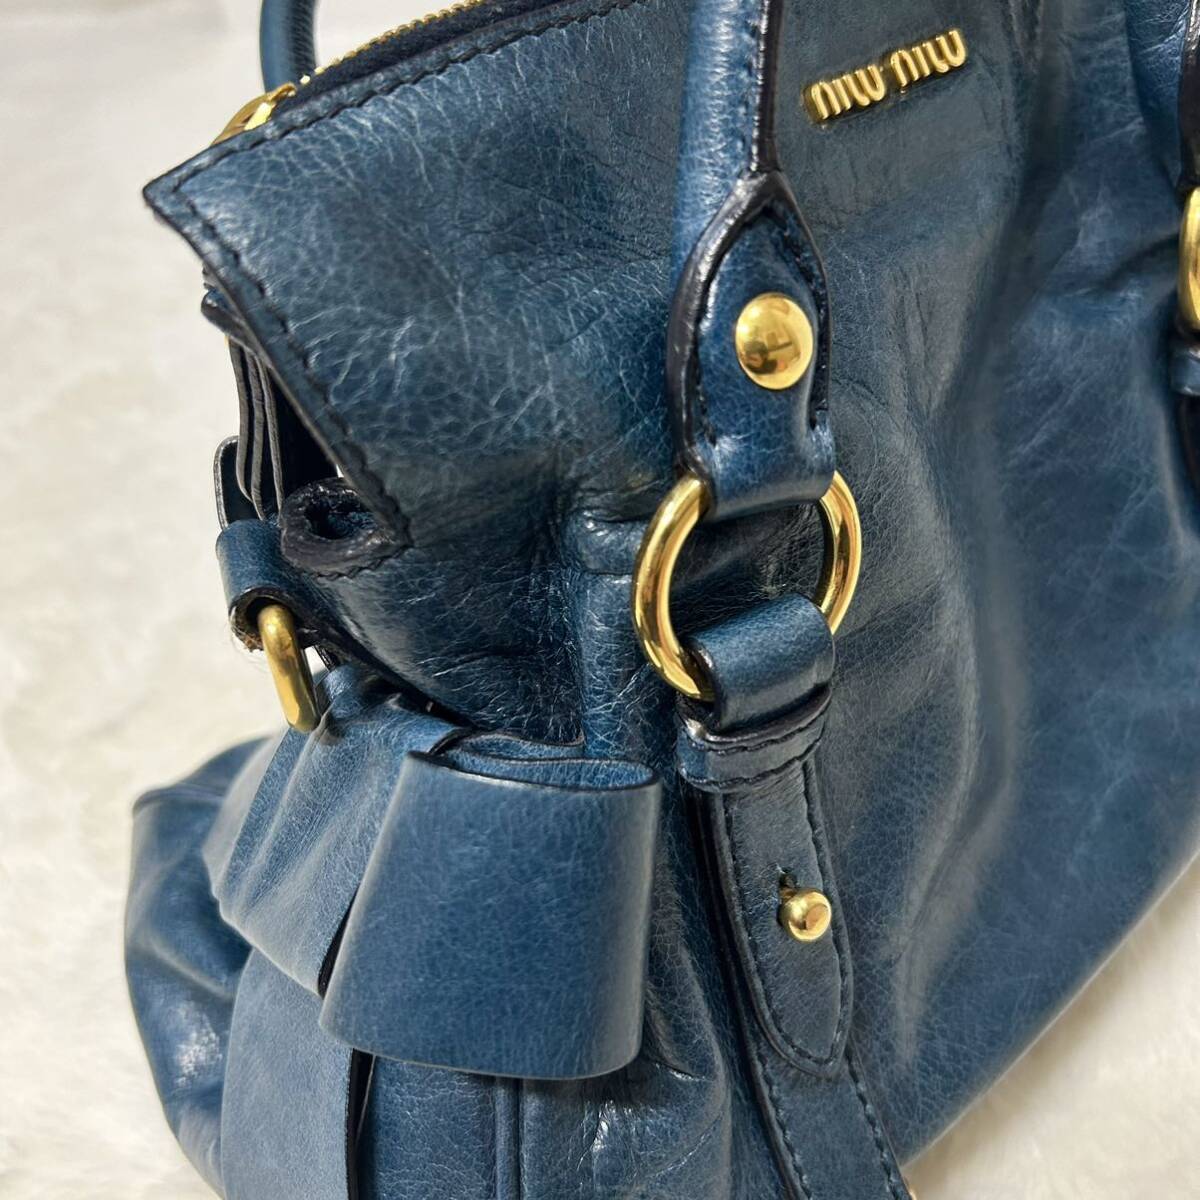 miumiu MiuMiu ribbon metal fittings handbag navy blue 